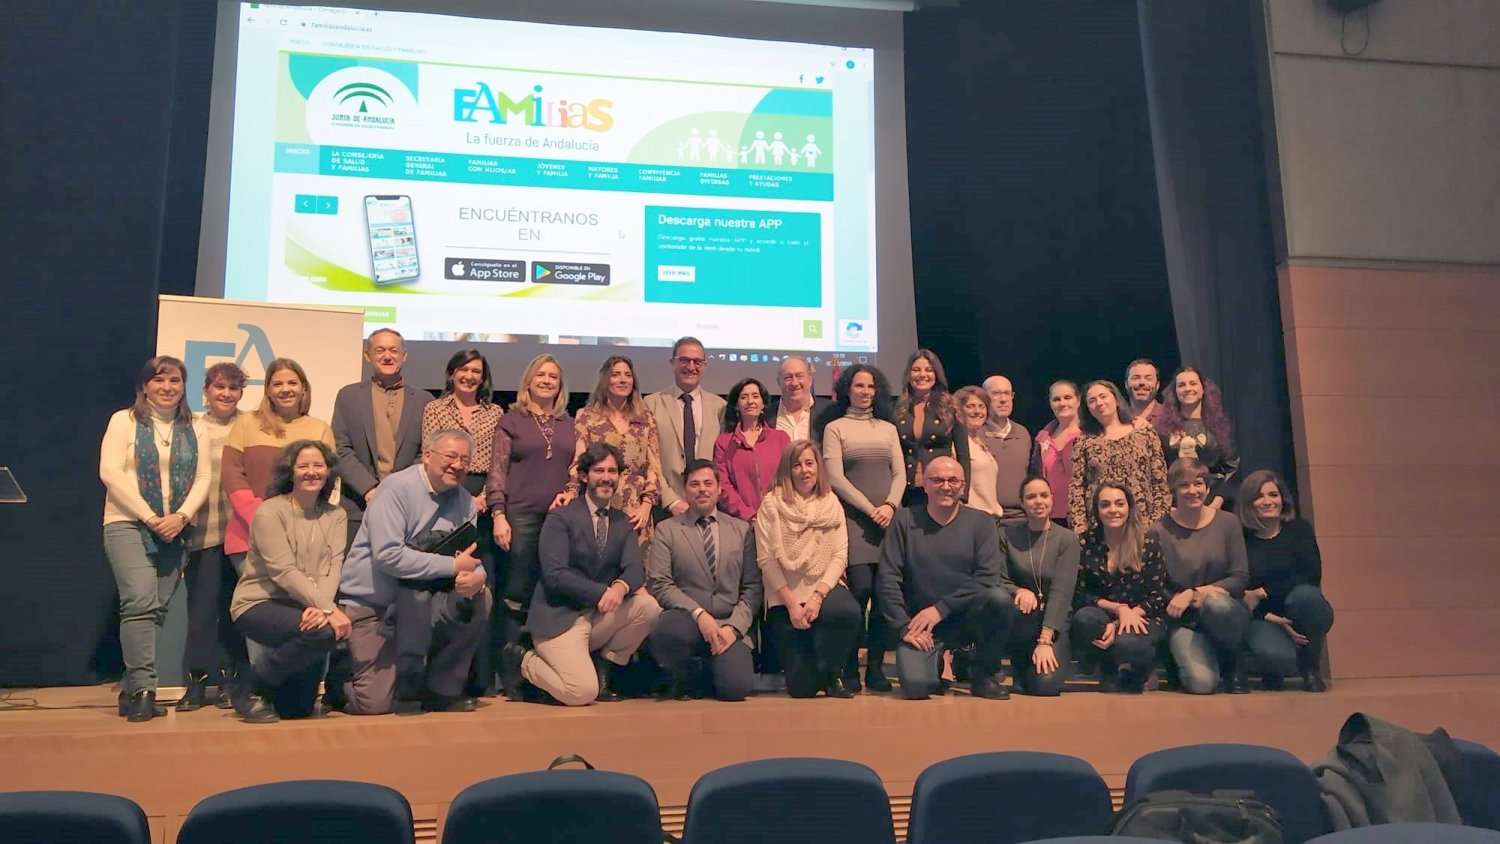 Junta presenta en Málaga la app 'Familias' para dar respuesta a las demandas de información